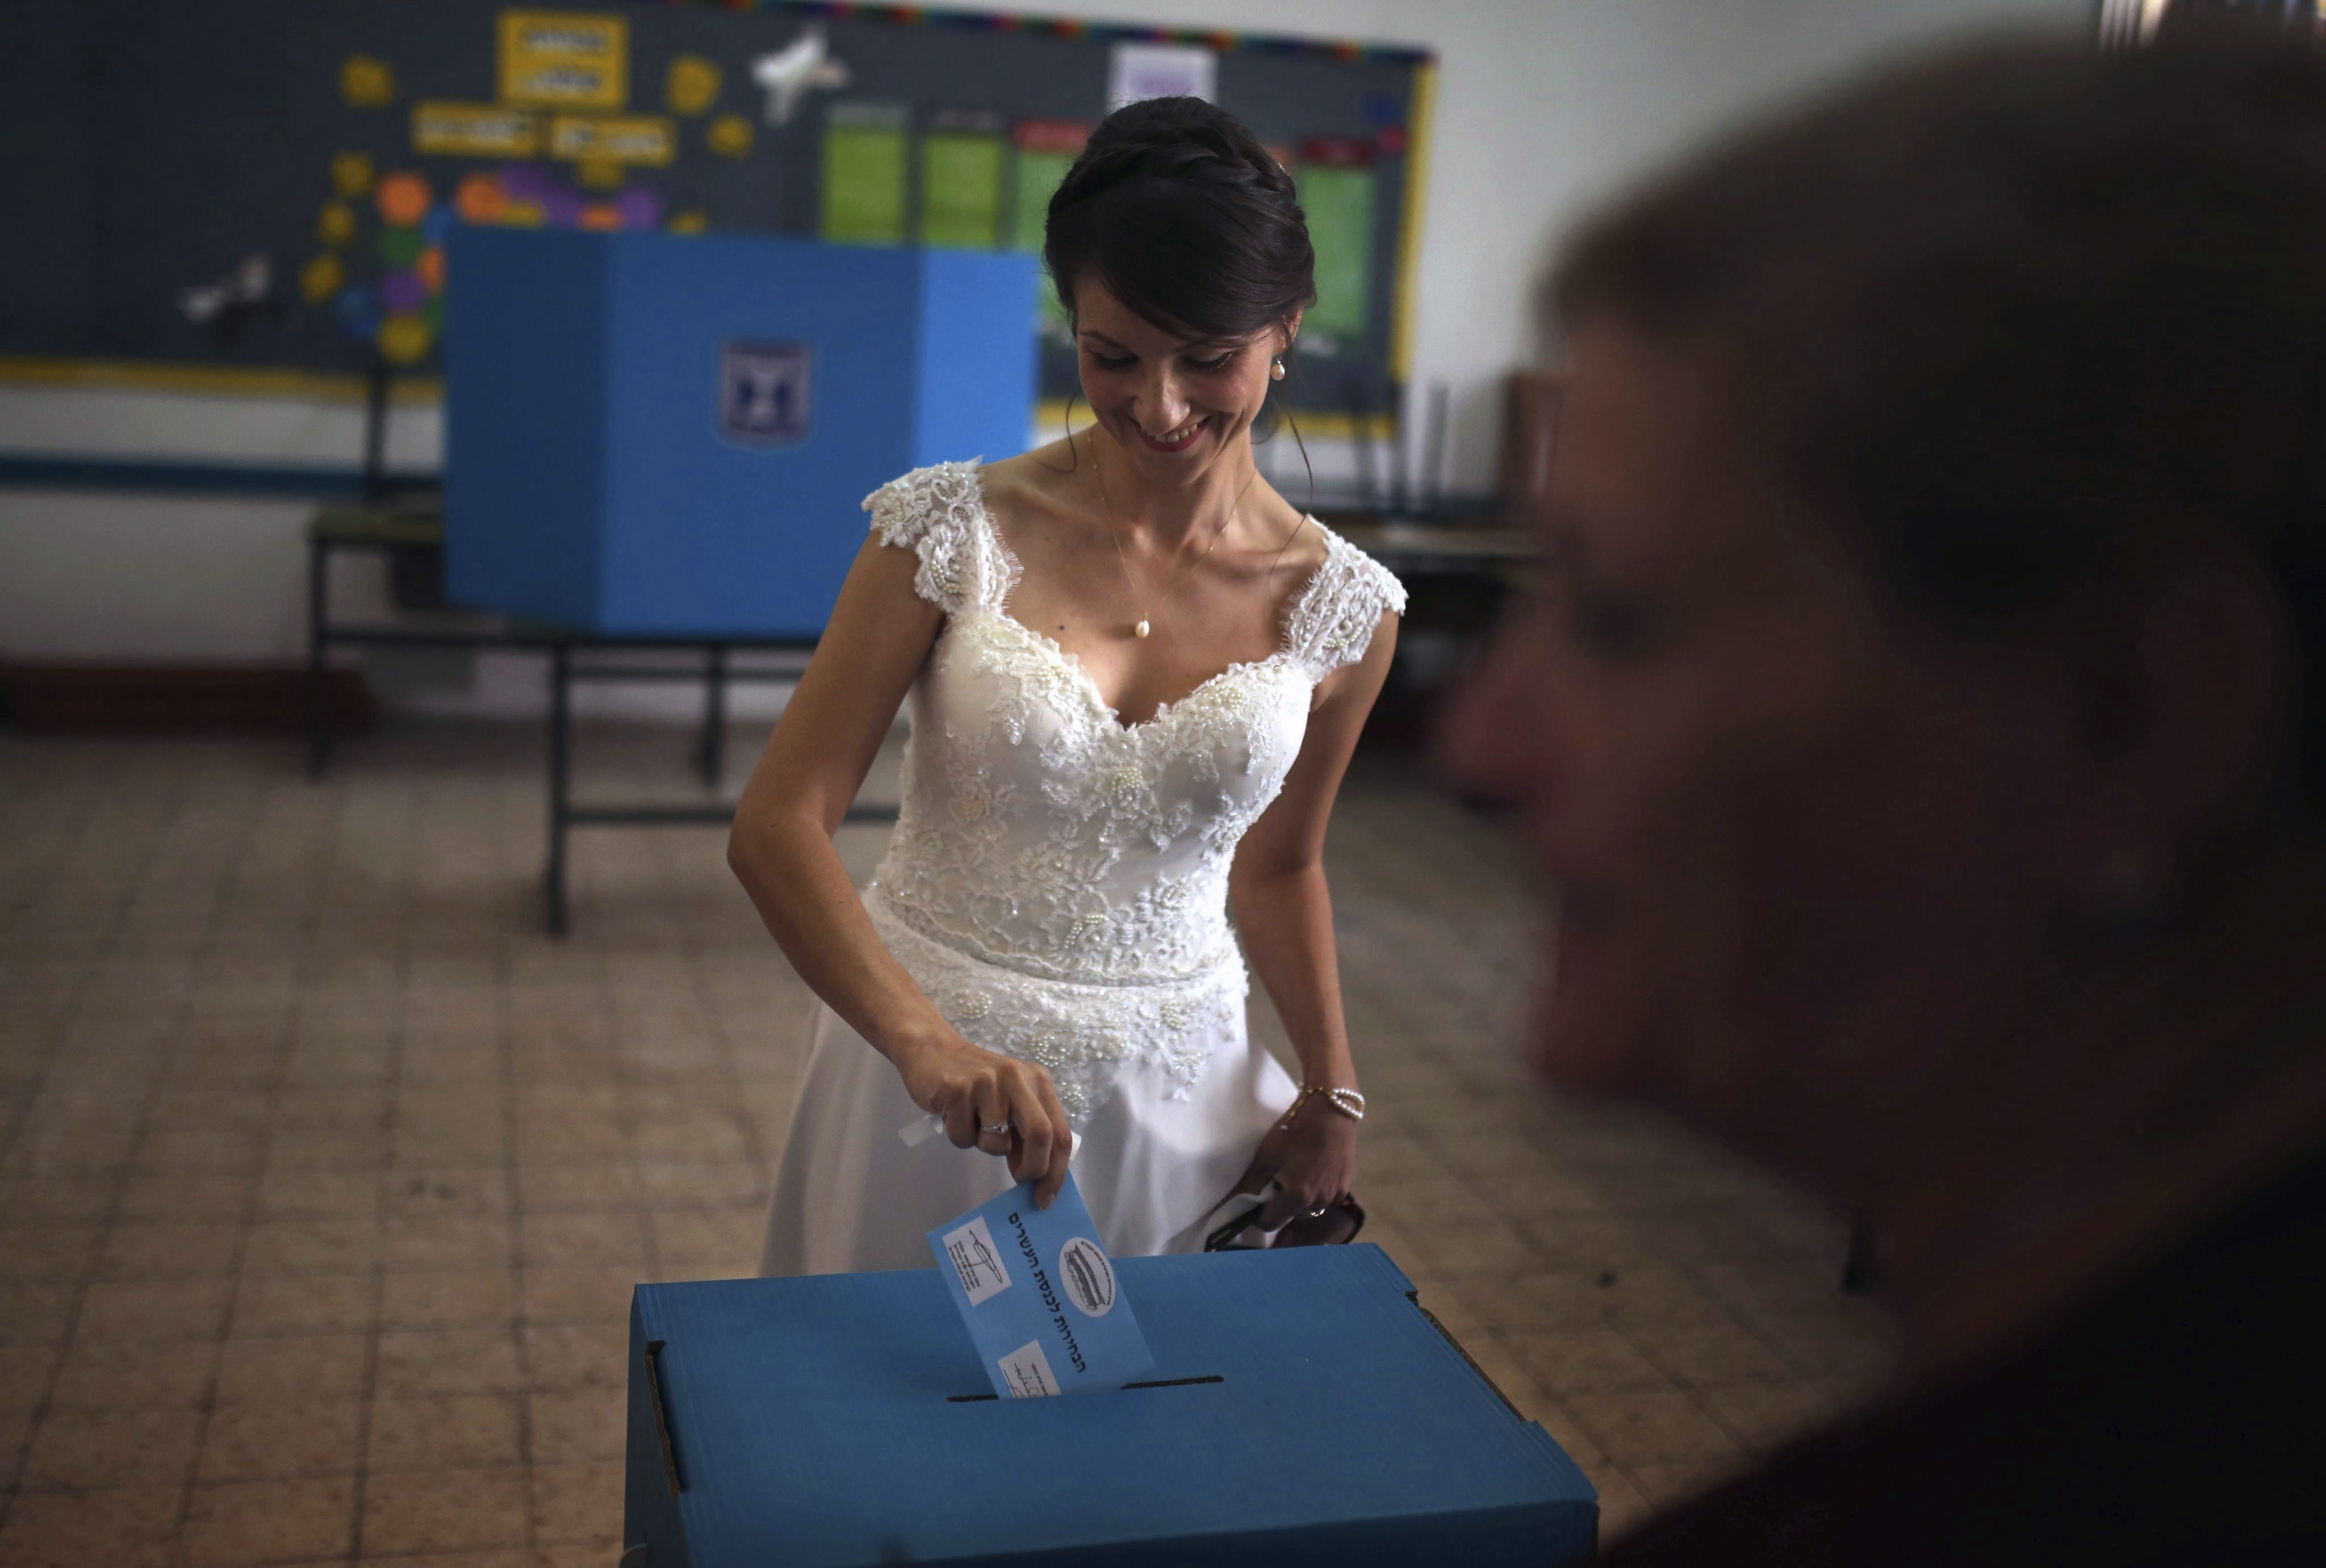 Una mujer asistió a la jornada electoral en el día de su boda.